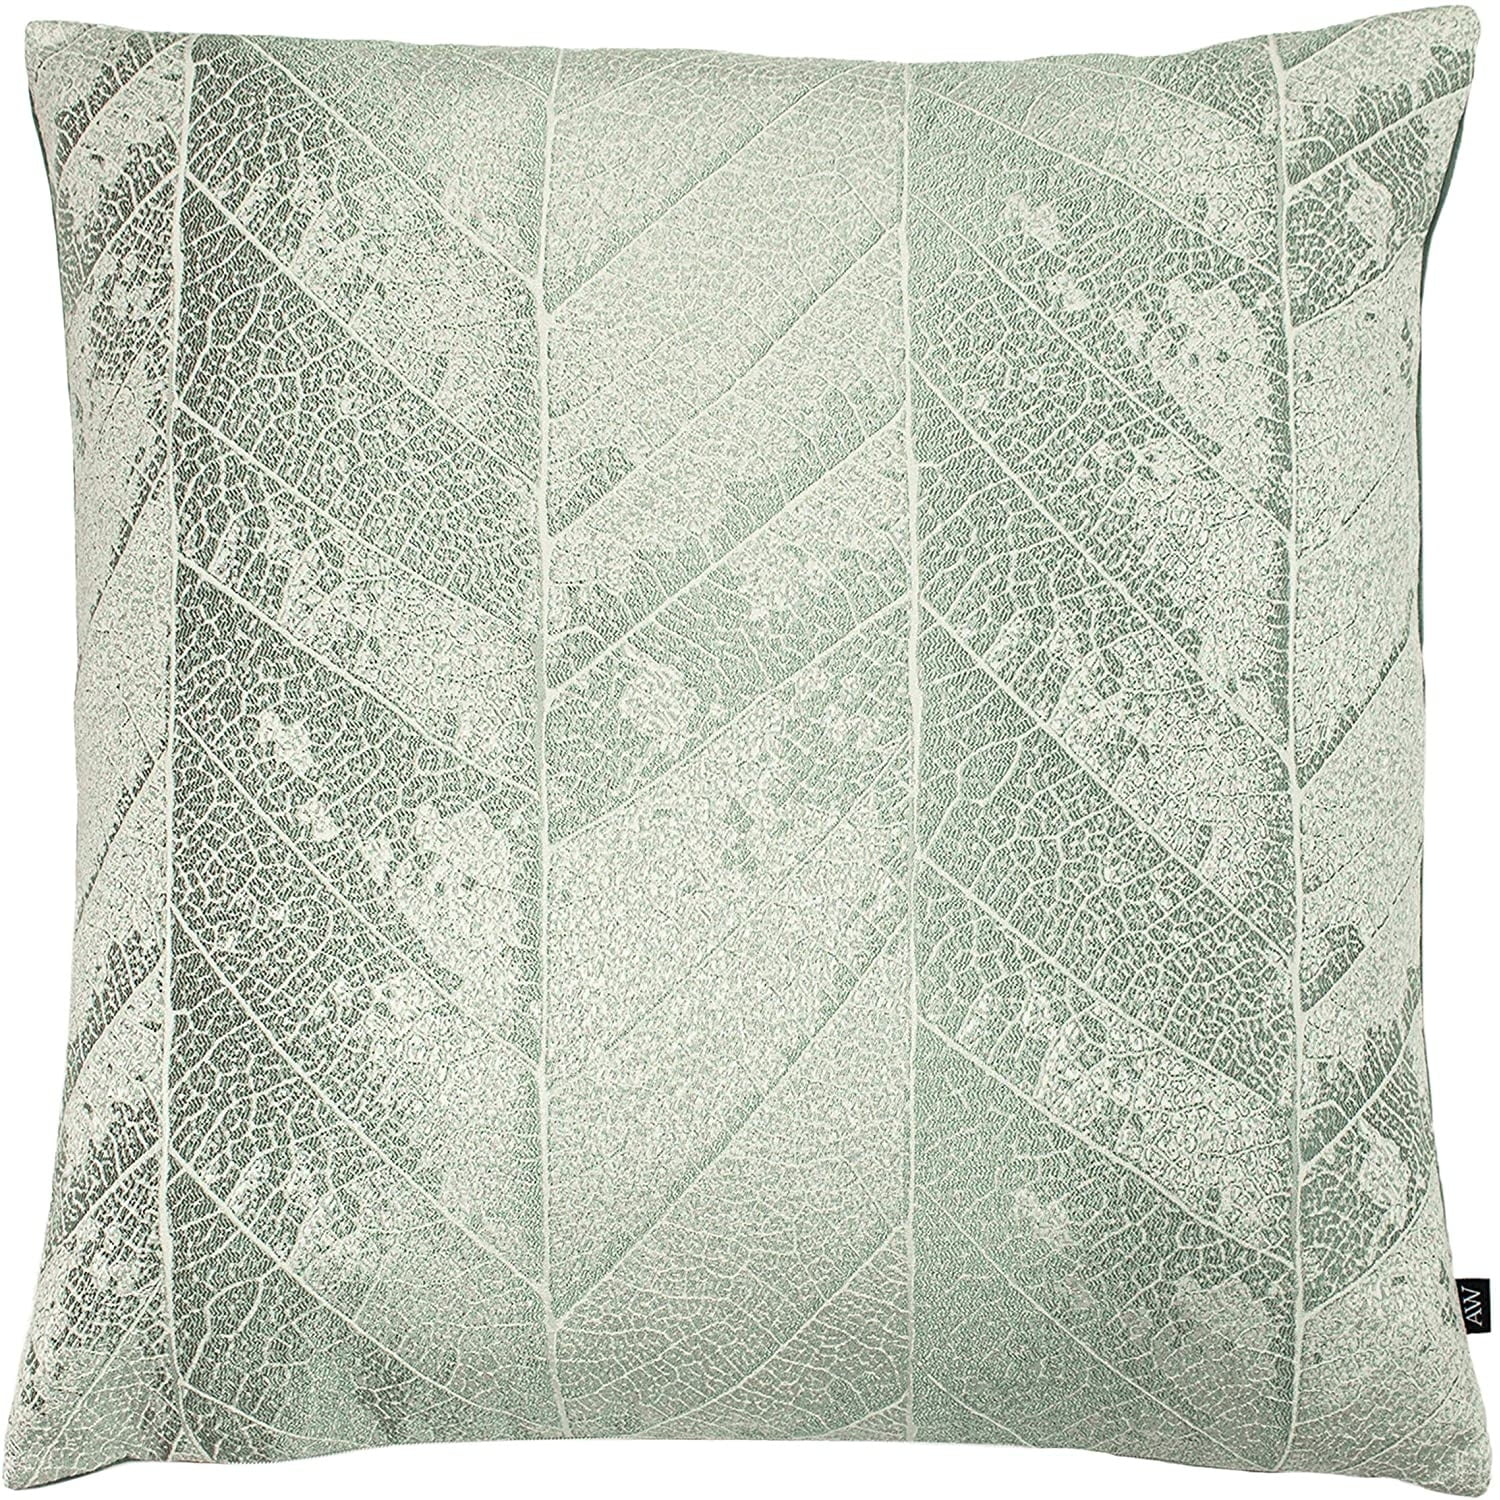 Beautiful Cushion Cover 18” Ashley Wilde Fabric Grey Silver Luxury Decor 